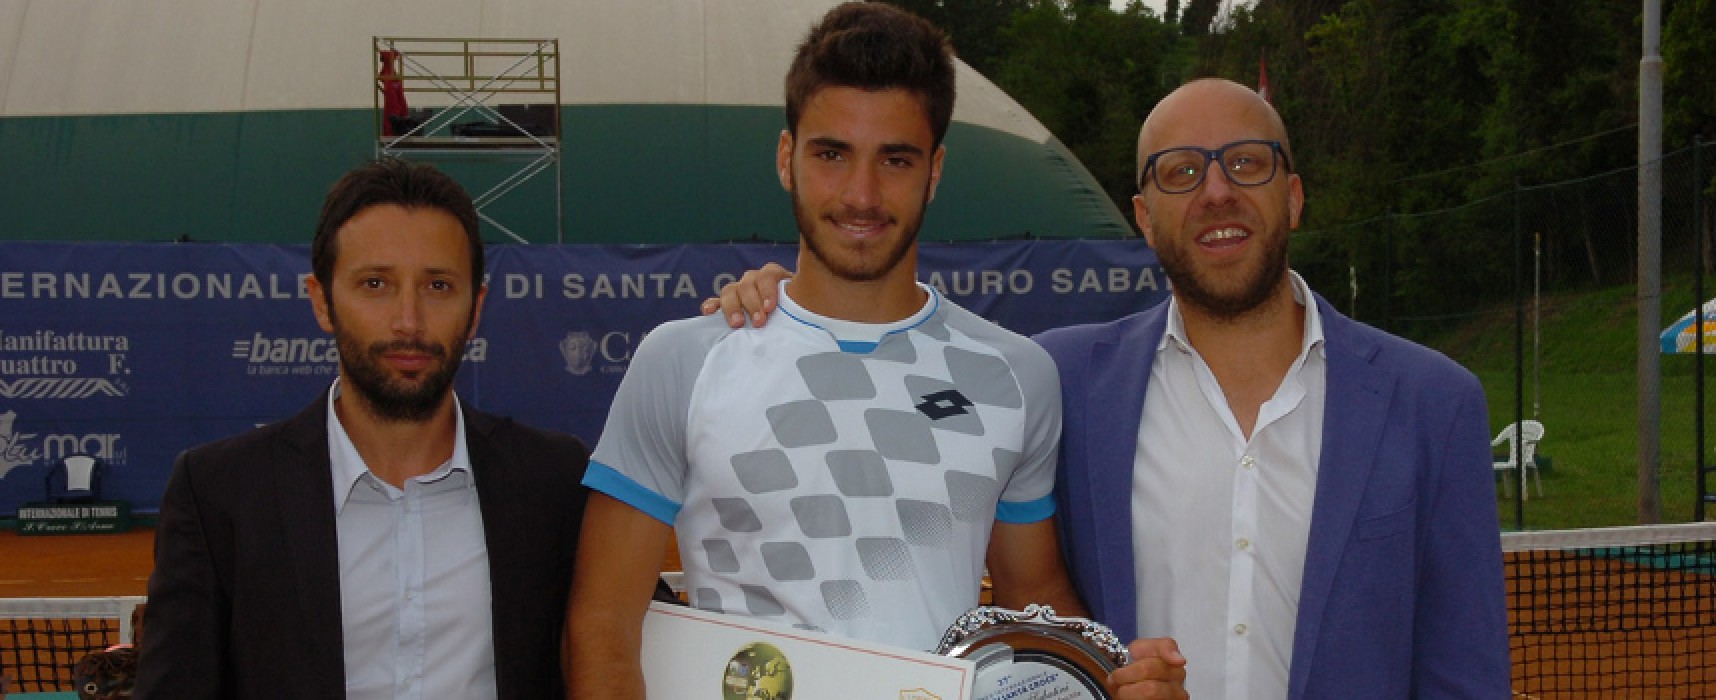 Andrea Pellegrino vince il 37° torneo Internazionale “Città di Santa Croce”